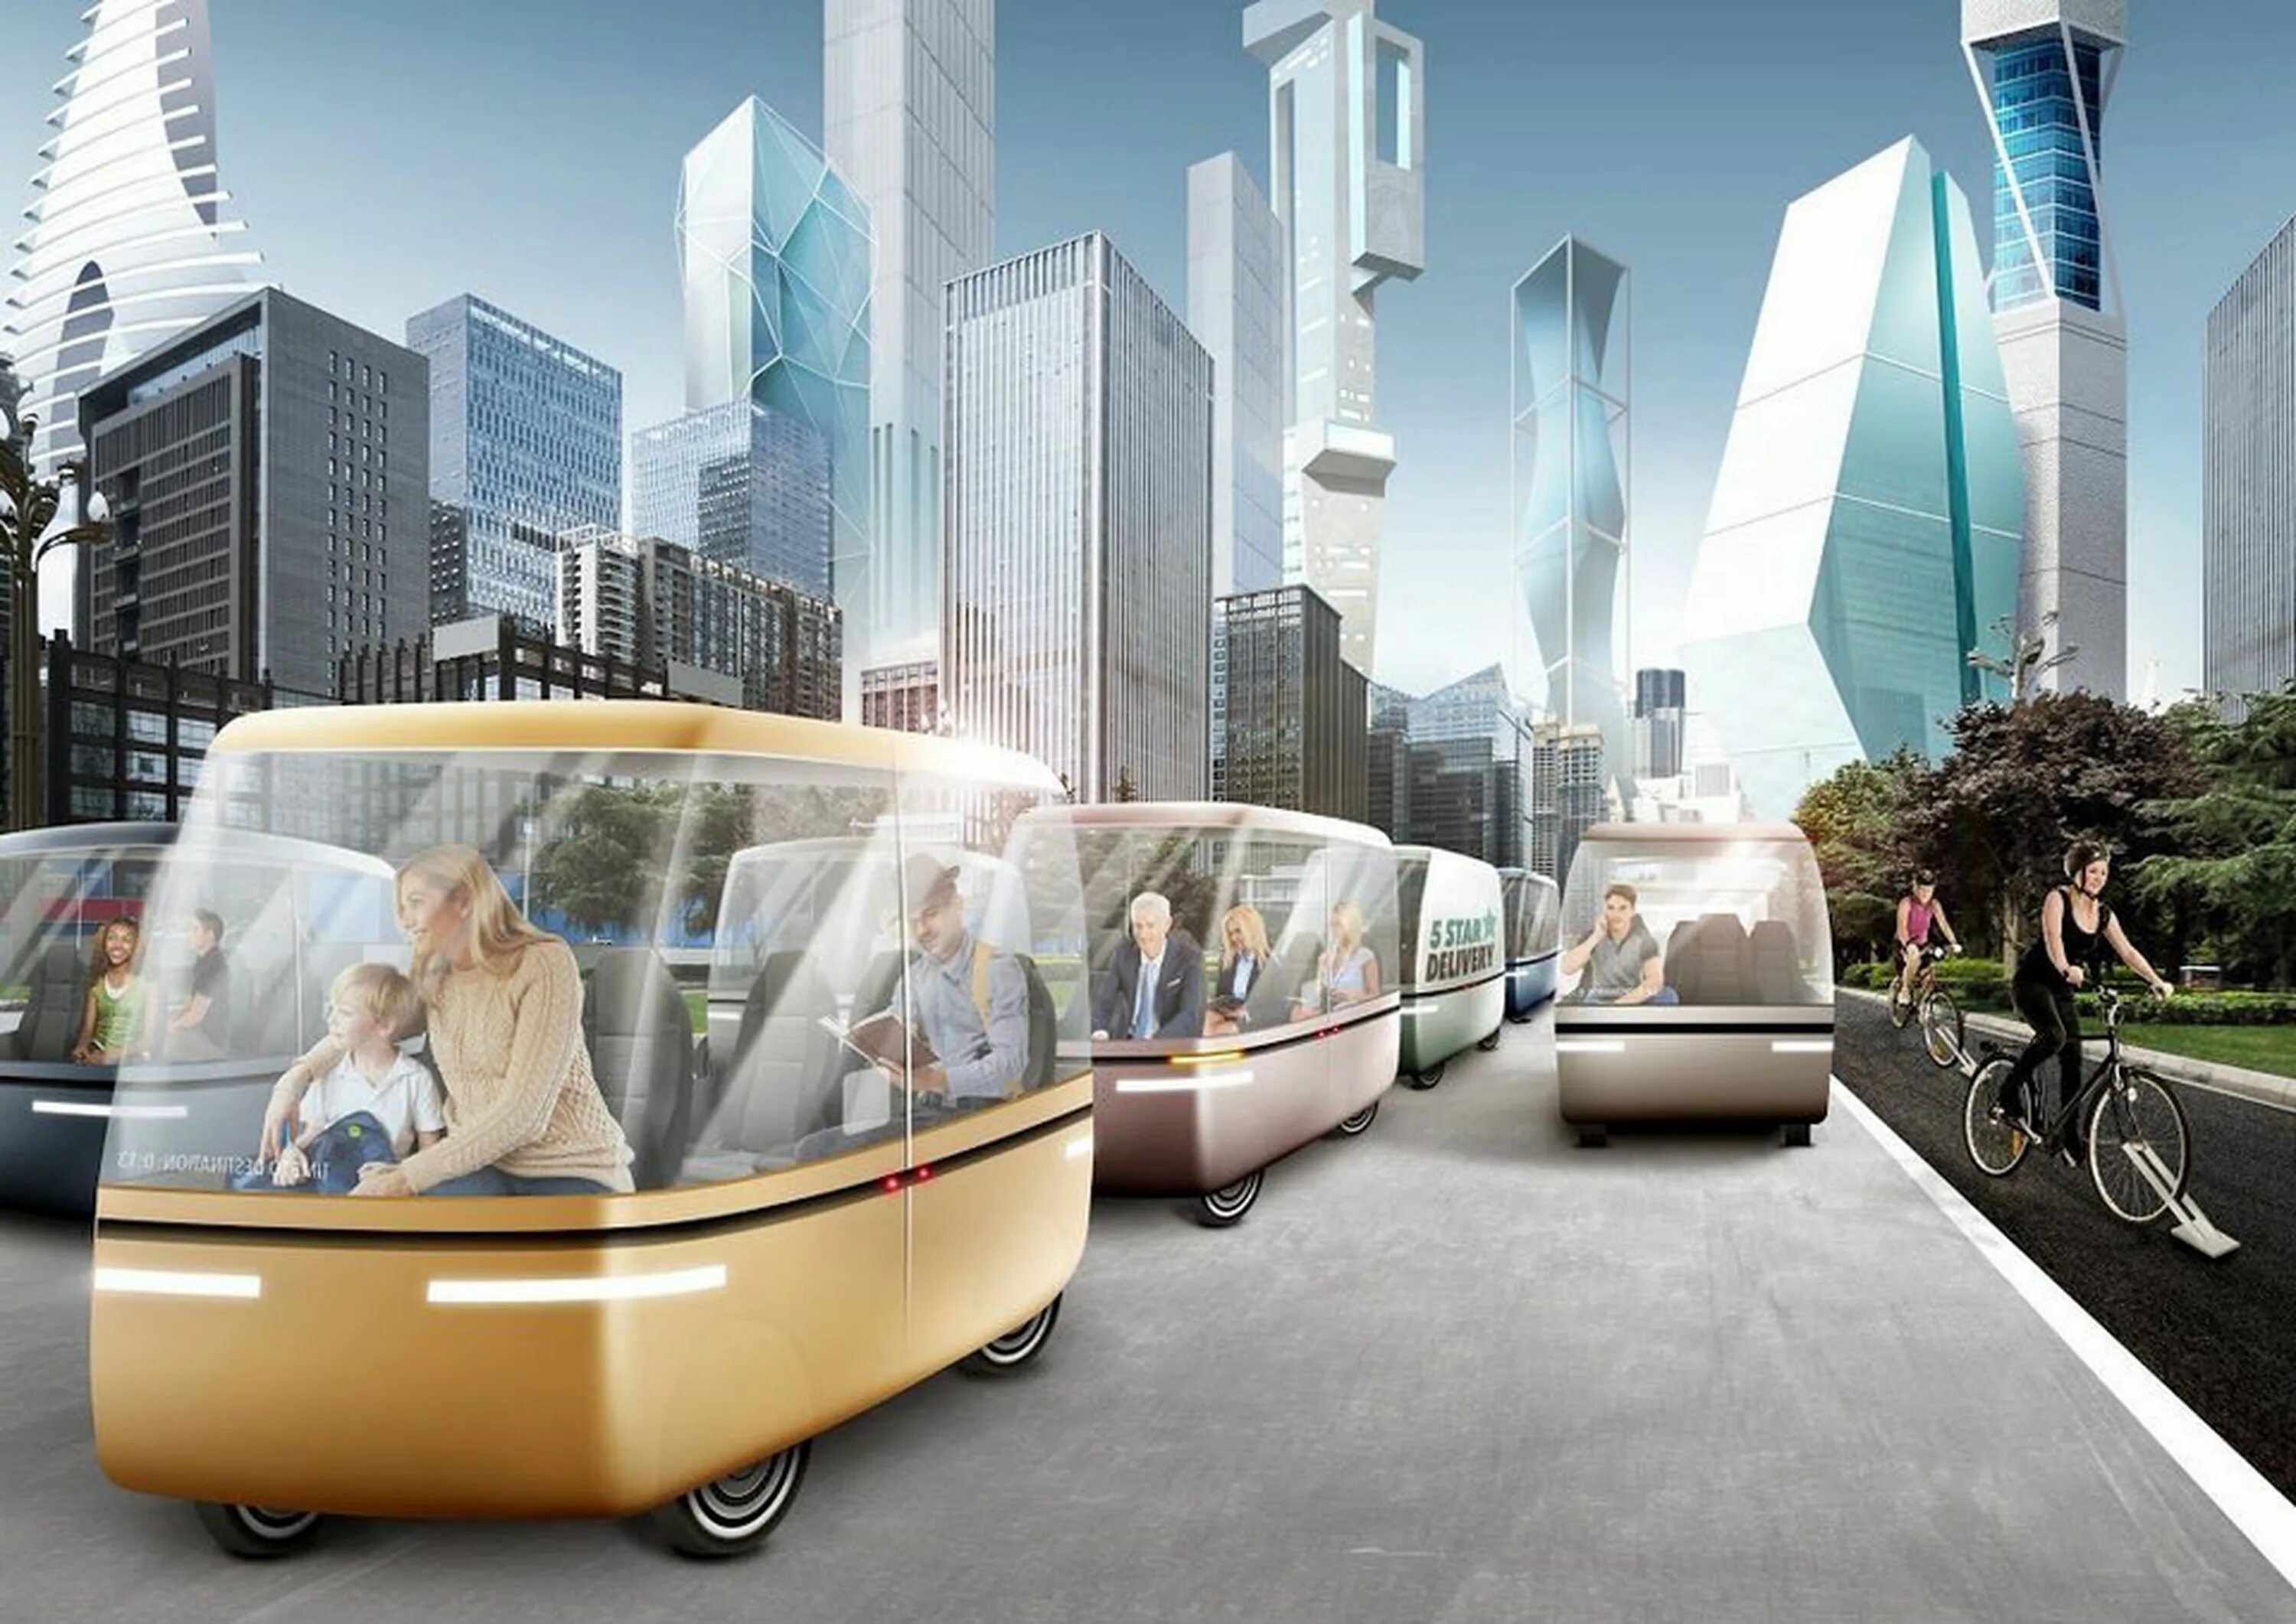 Транспорт будущего. 2050 Год будущее. Город будущего транспорт. Картинки будущего.